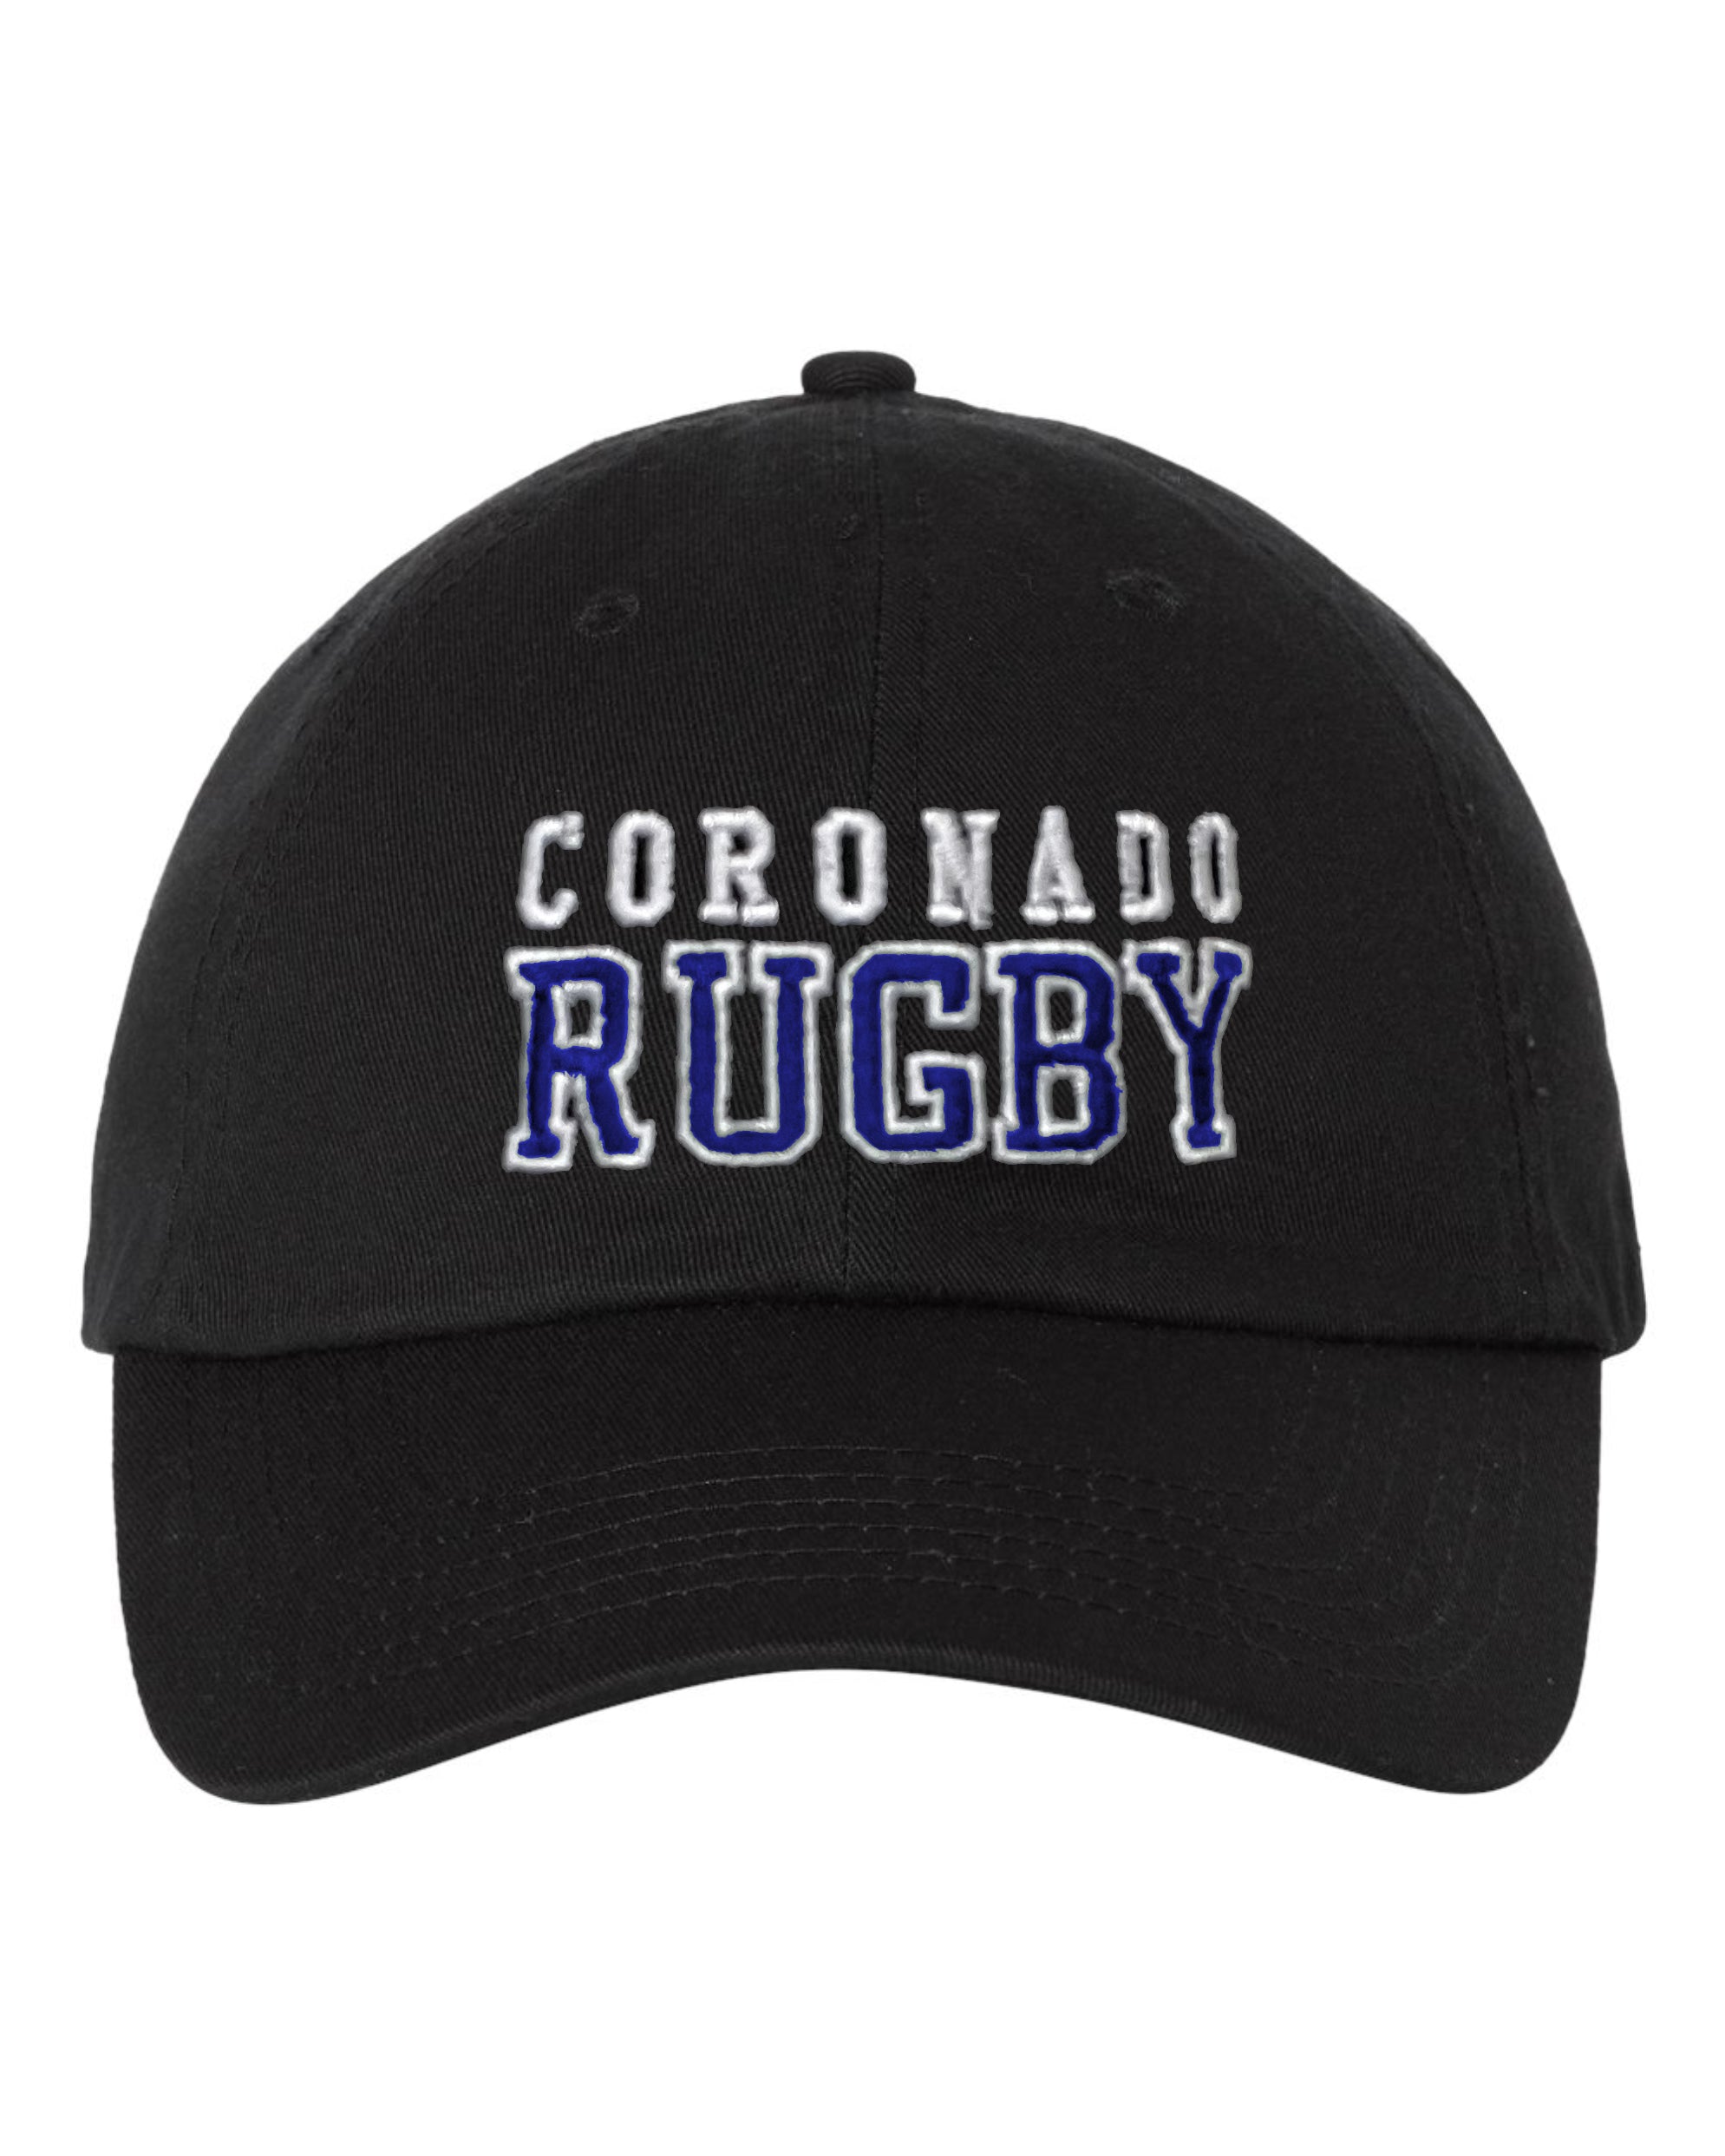 Coronado Rugby Dad Hat